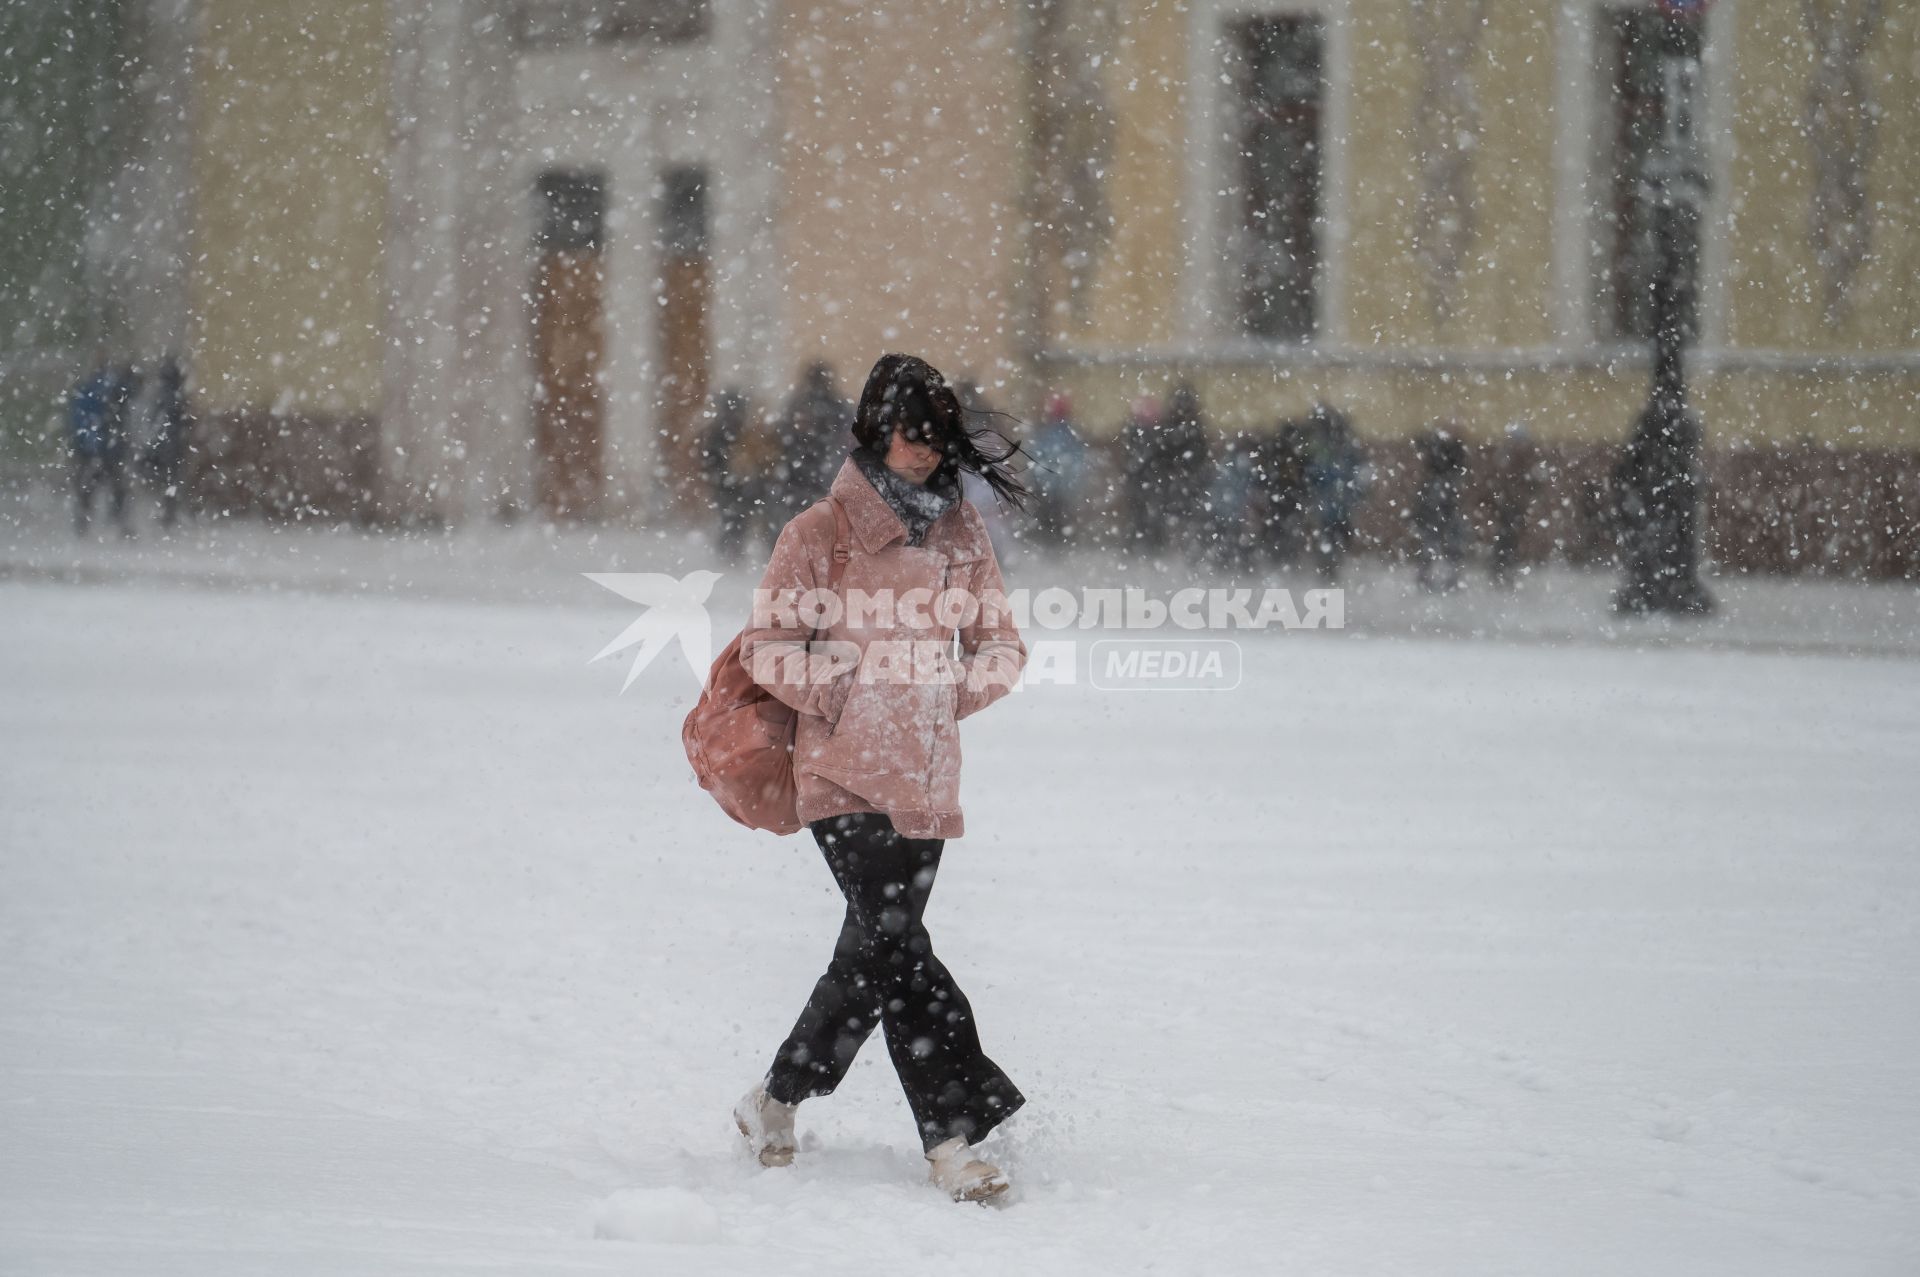 Санкт-Петербург. Прохожие на улице города во время снежного шторма.